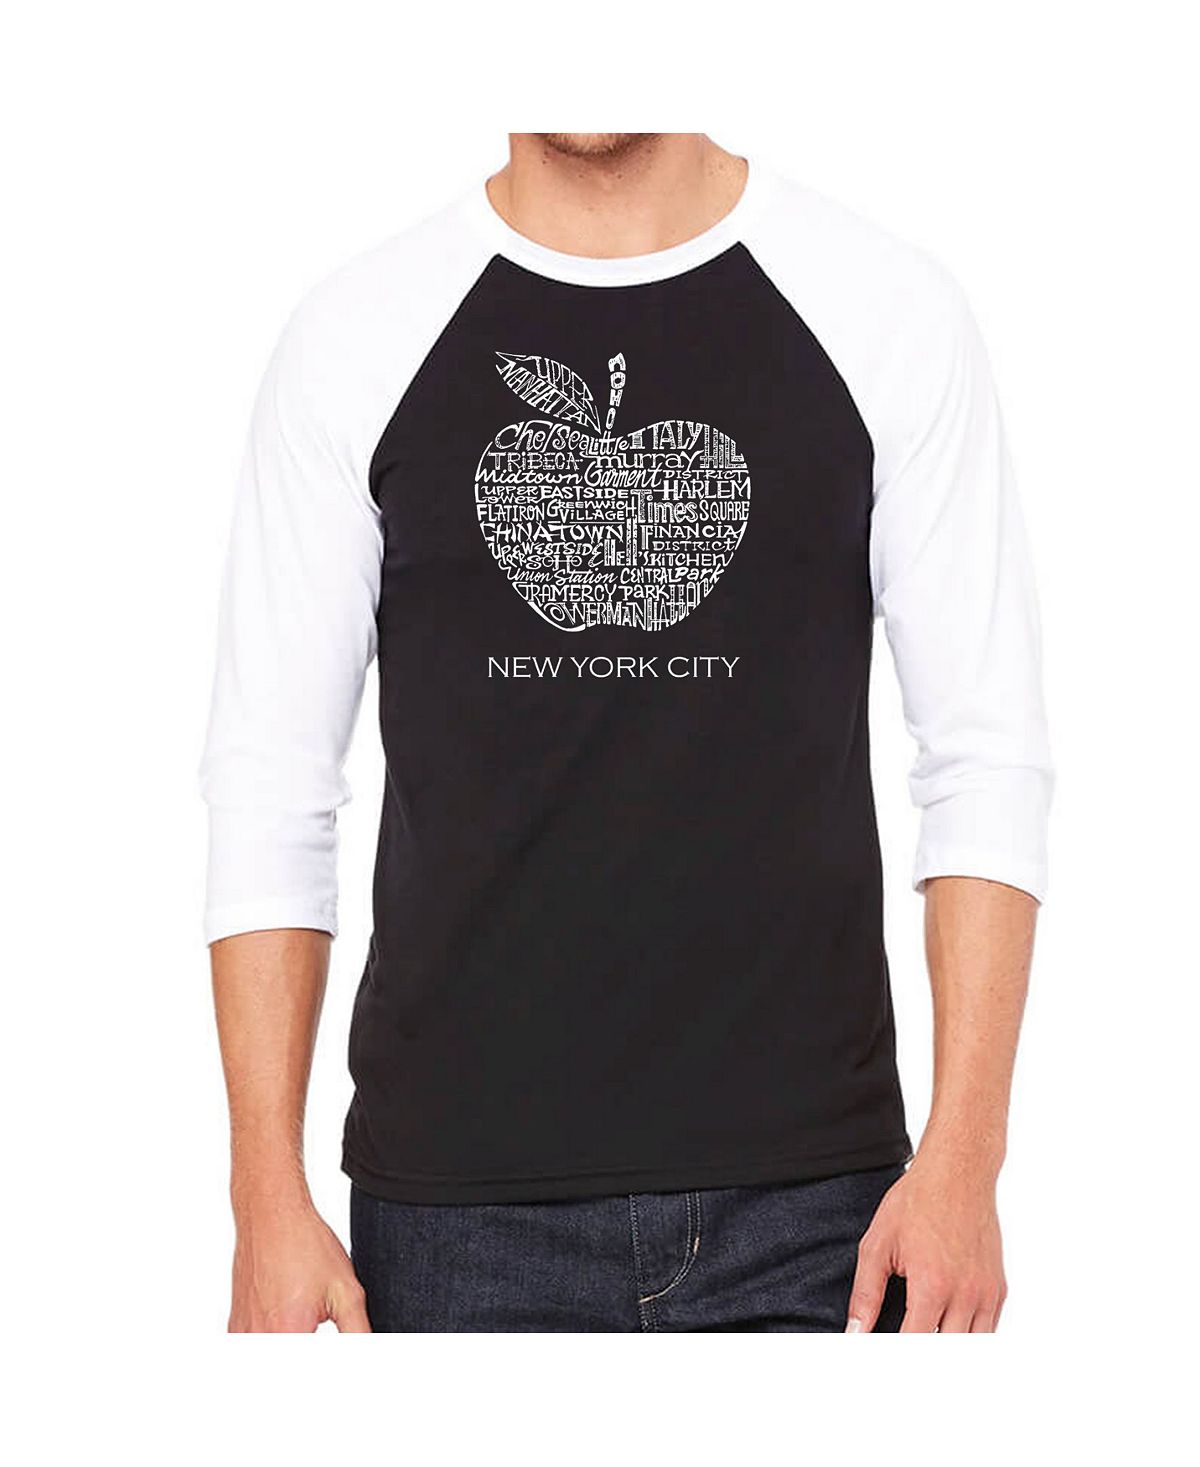 new york city Мужская футболка с надписью reglan и надписью neighborhoods in new york city LA Pop Art, черный